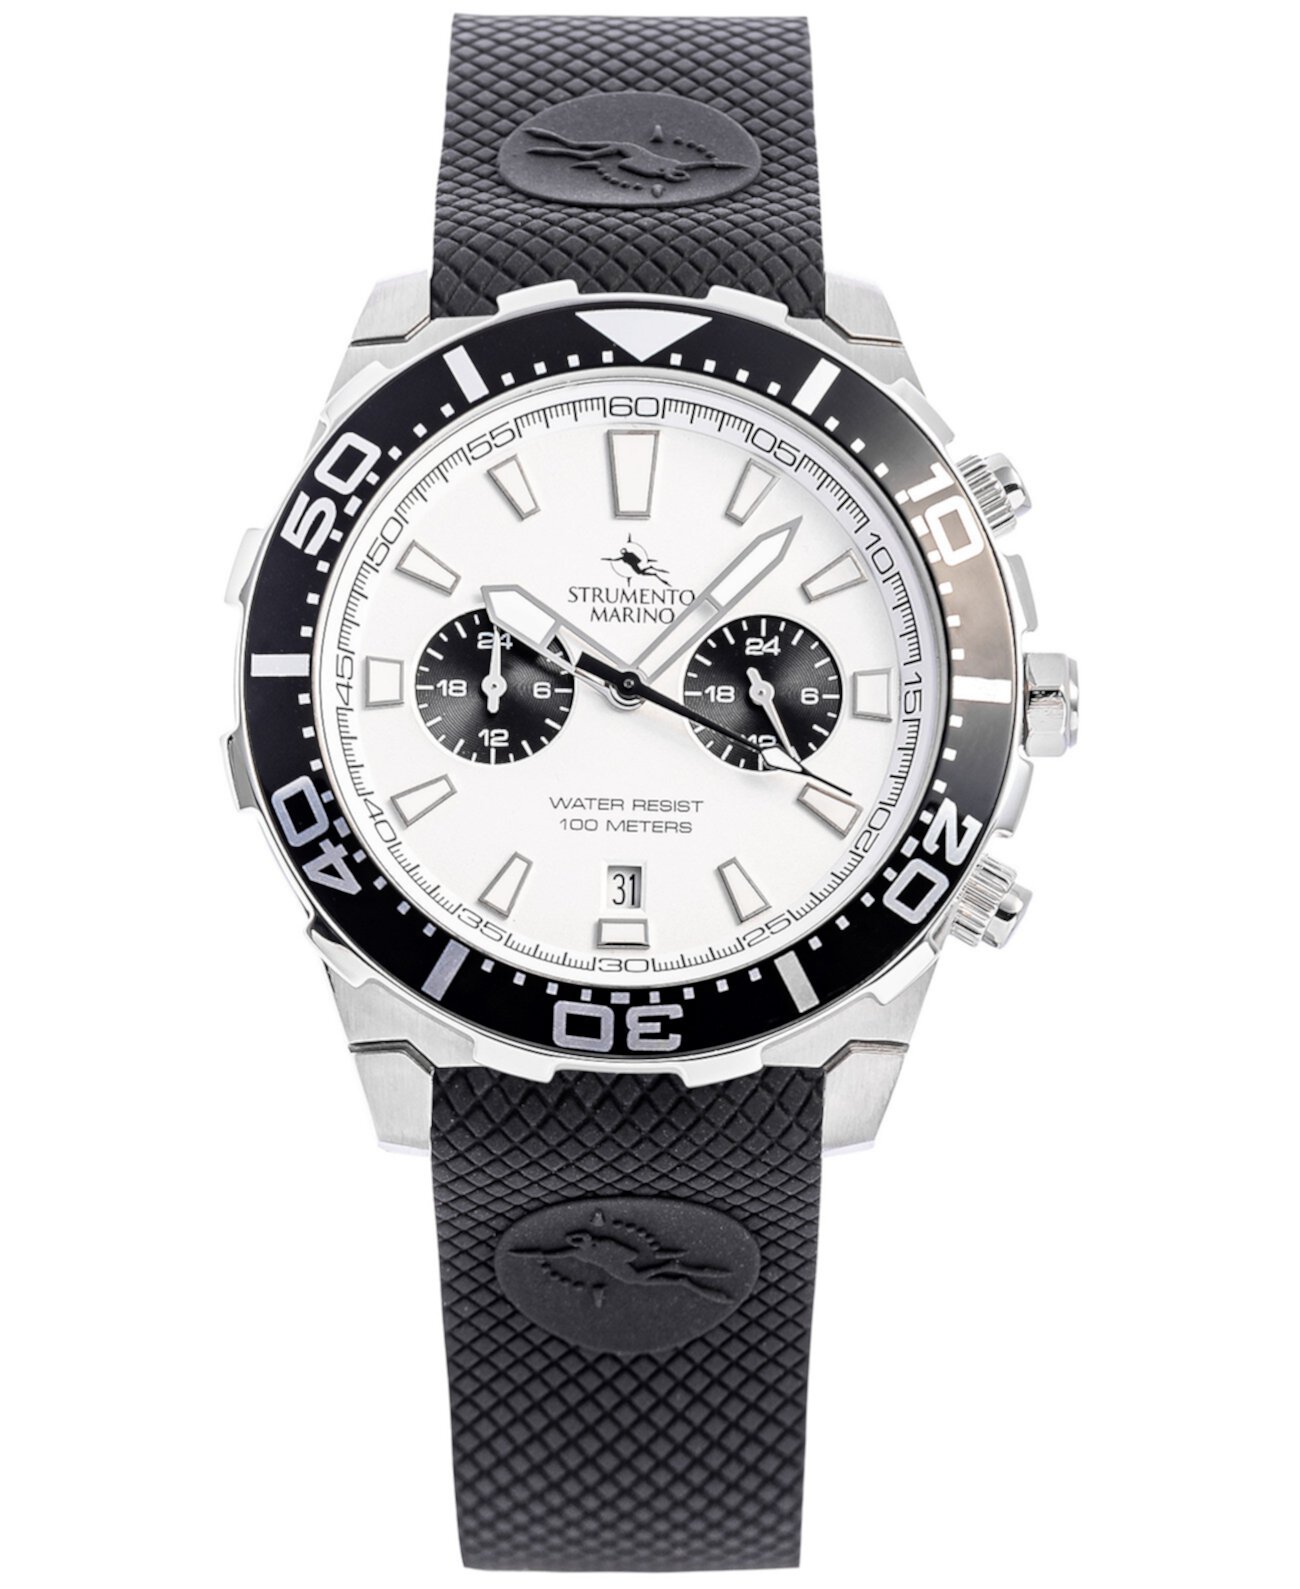 Мужские часы Skipper Dual Time Zone с черным силиконовым ремешком 44 мм, созданы для Macy's Strumento Marino